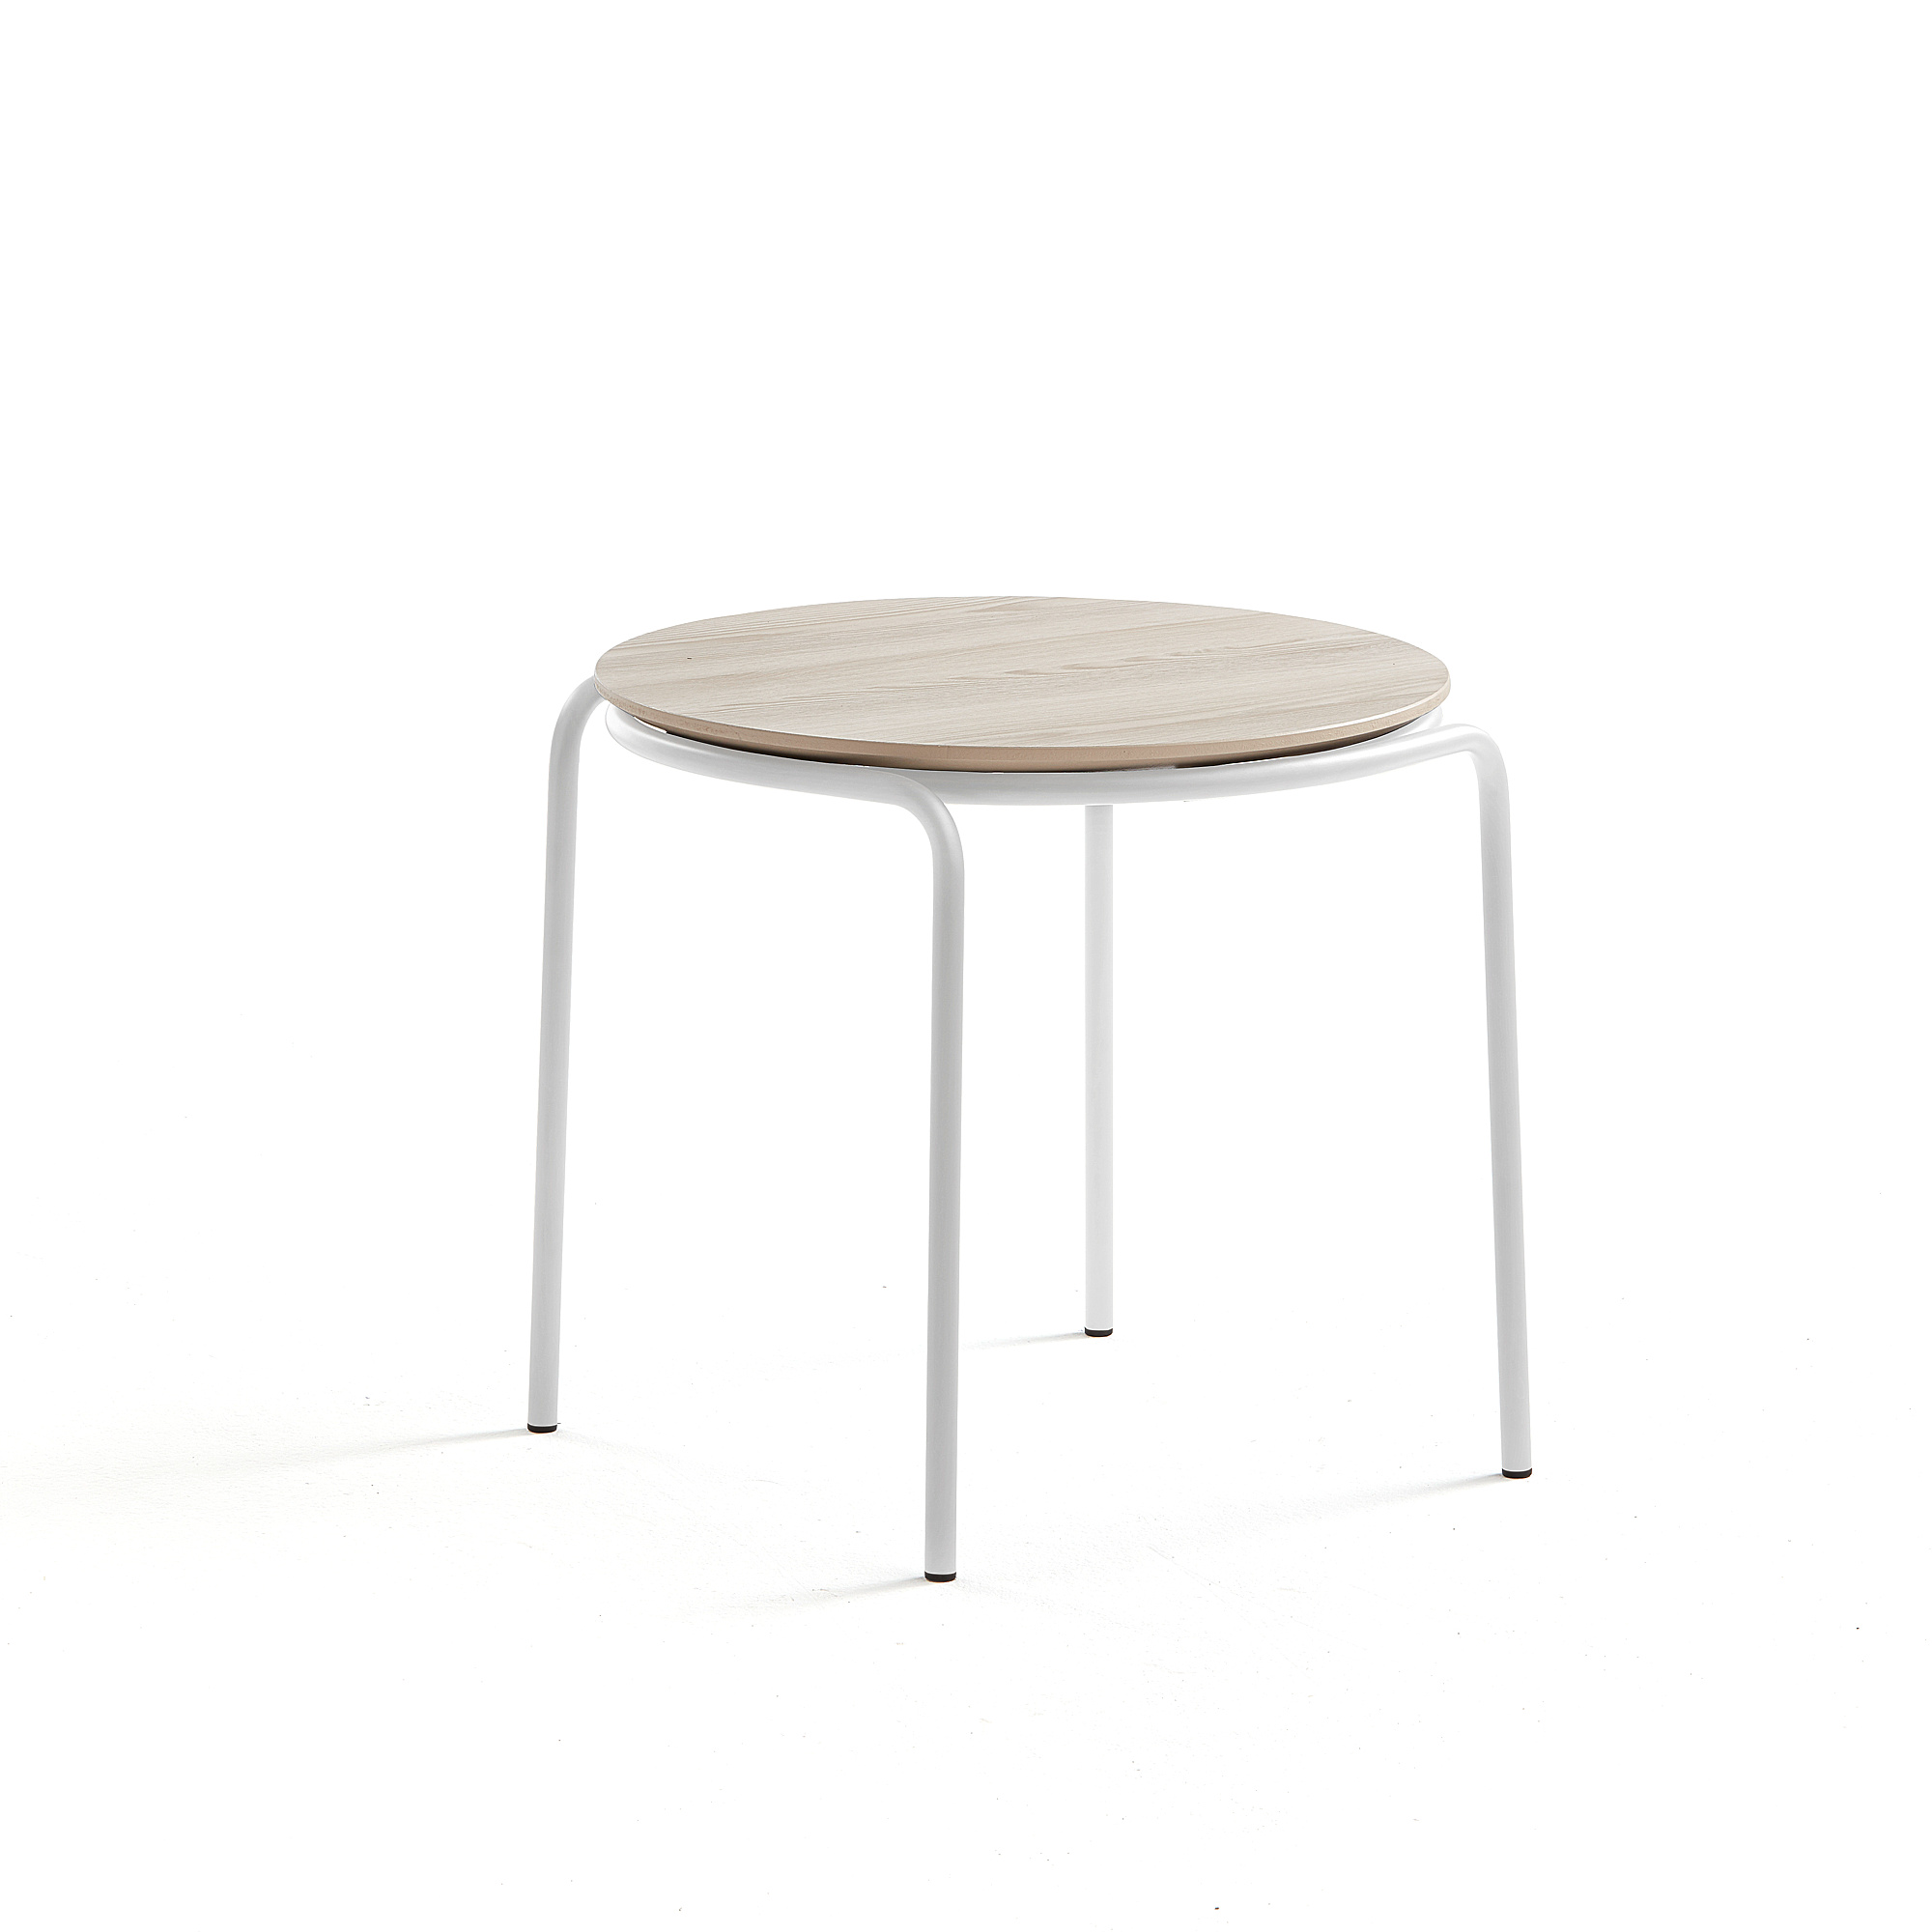 Konferenční stolek Ashley, Ø570 mm, výška 470 mm, bílá, jasan